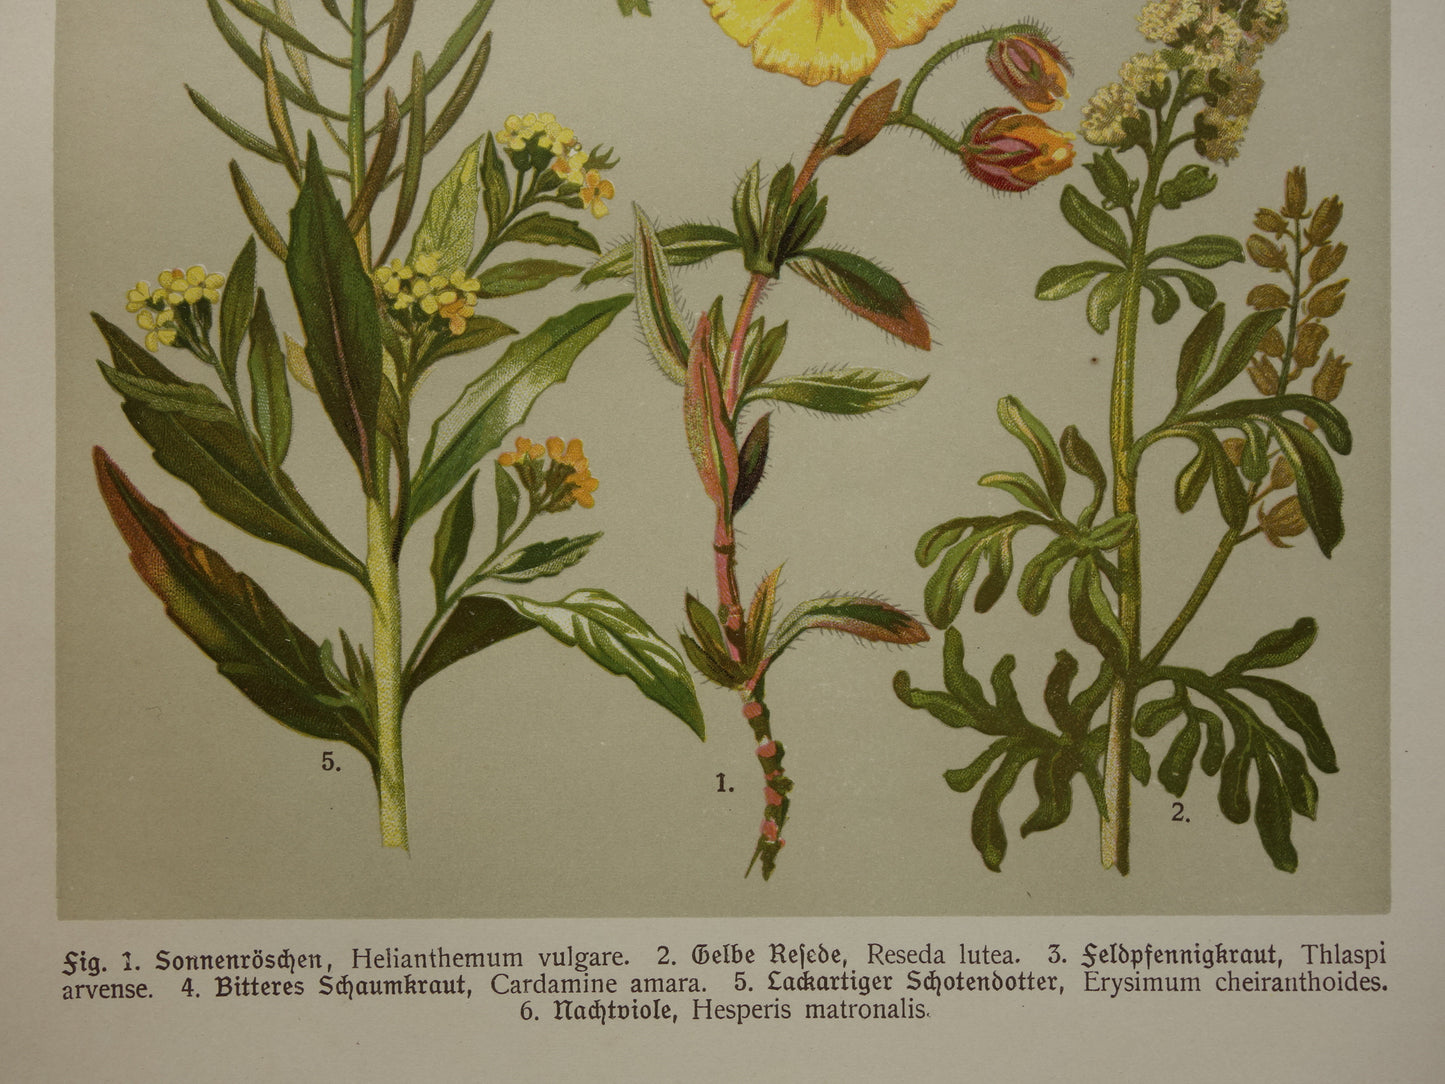 Antieke botanische prent Geel zonneroosje Gewone steenraket originele oude illustratie Damastbloem Bloemen botanie prenten